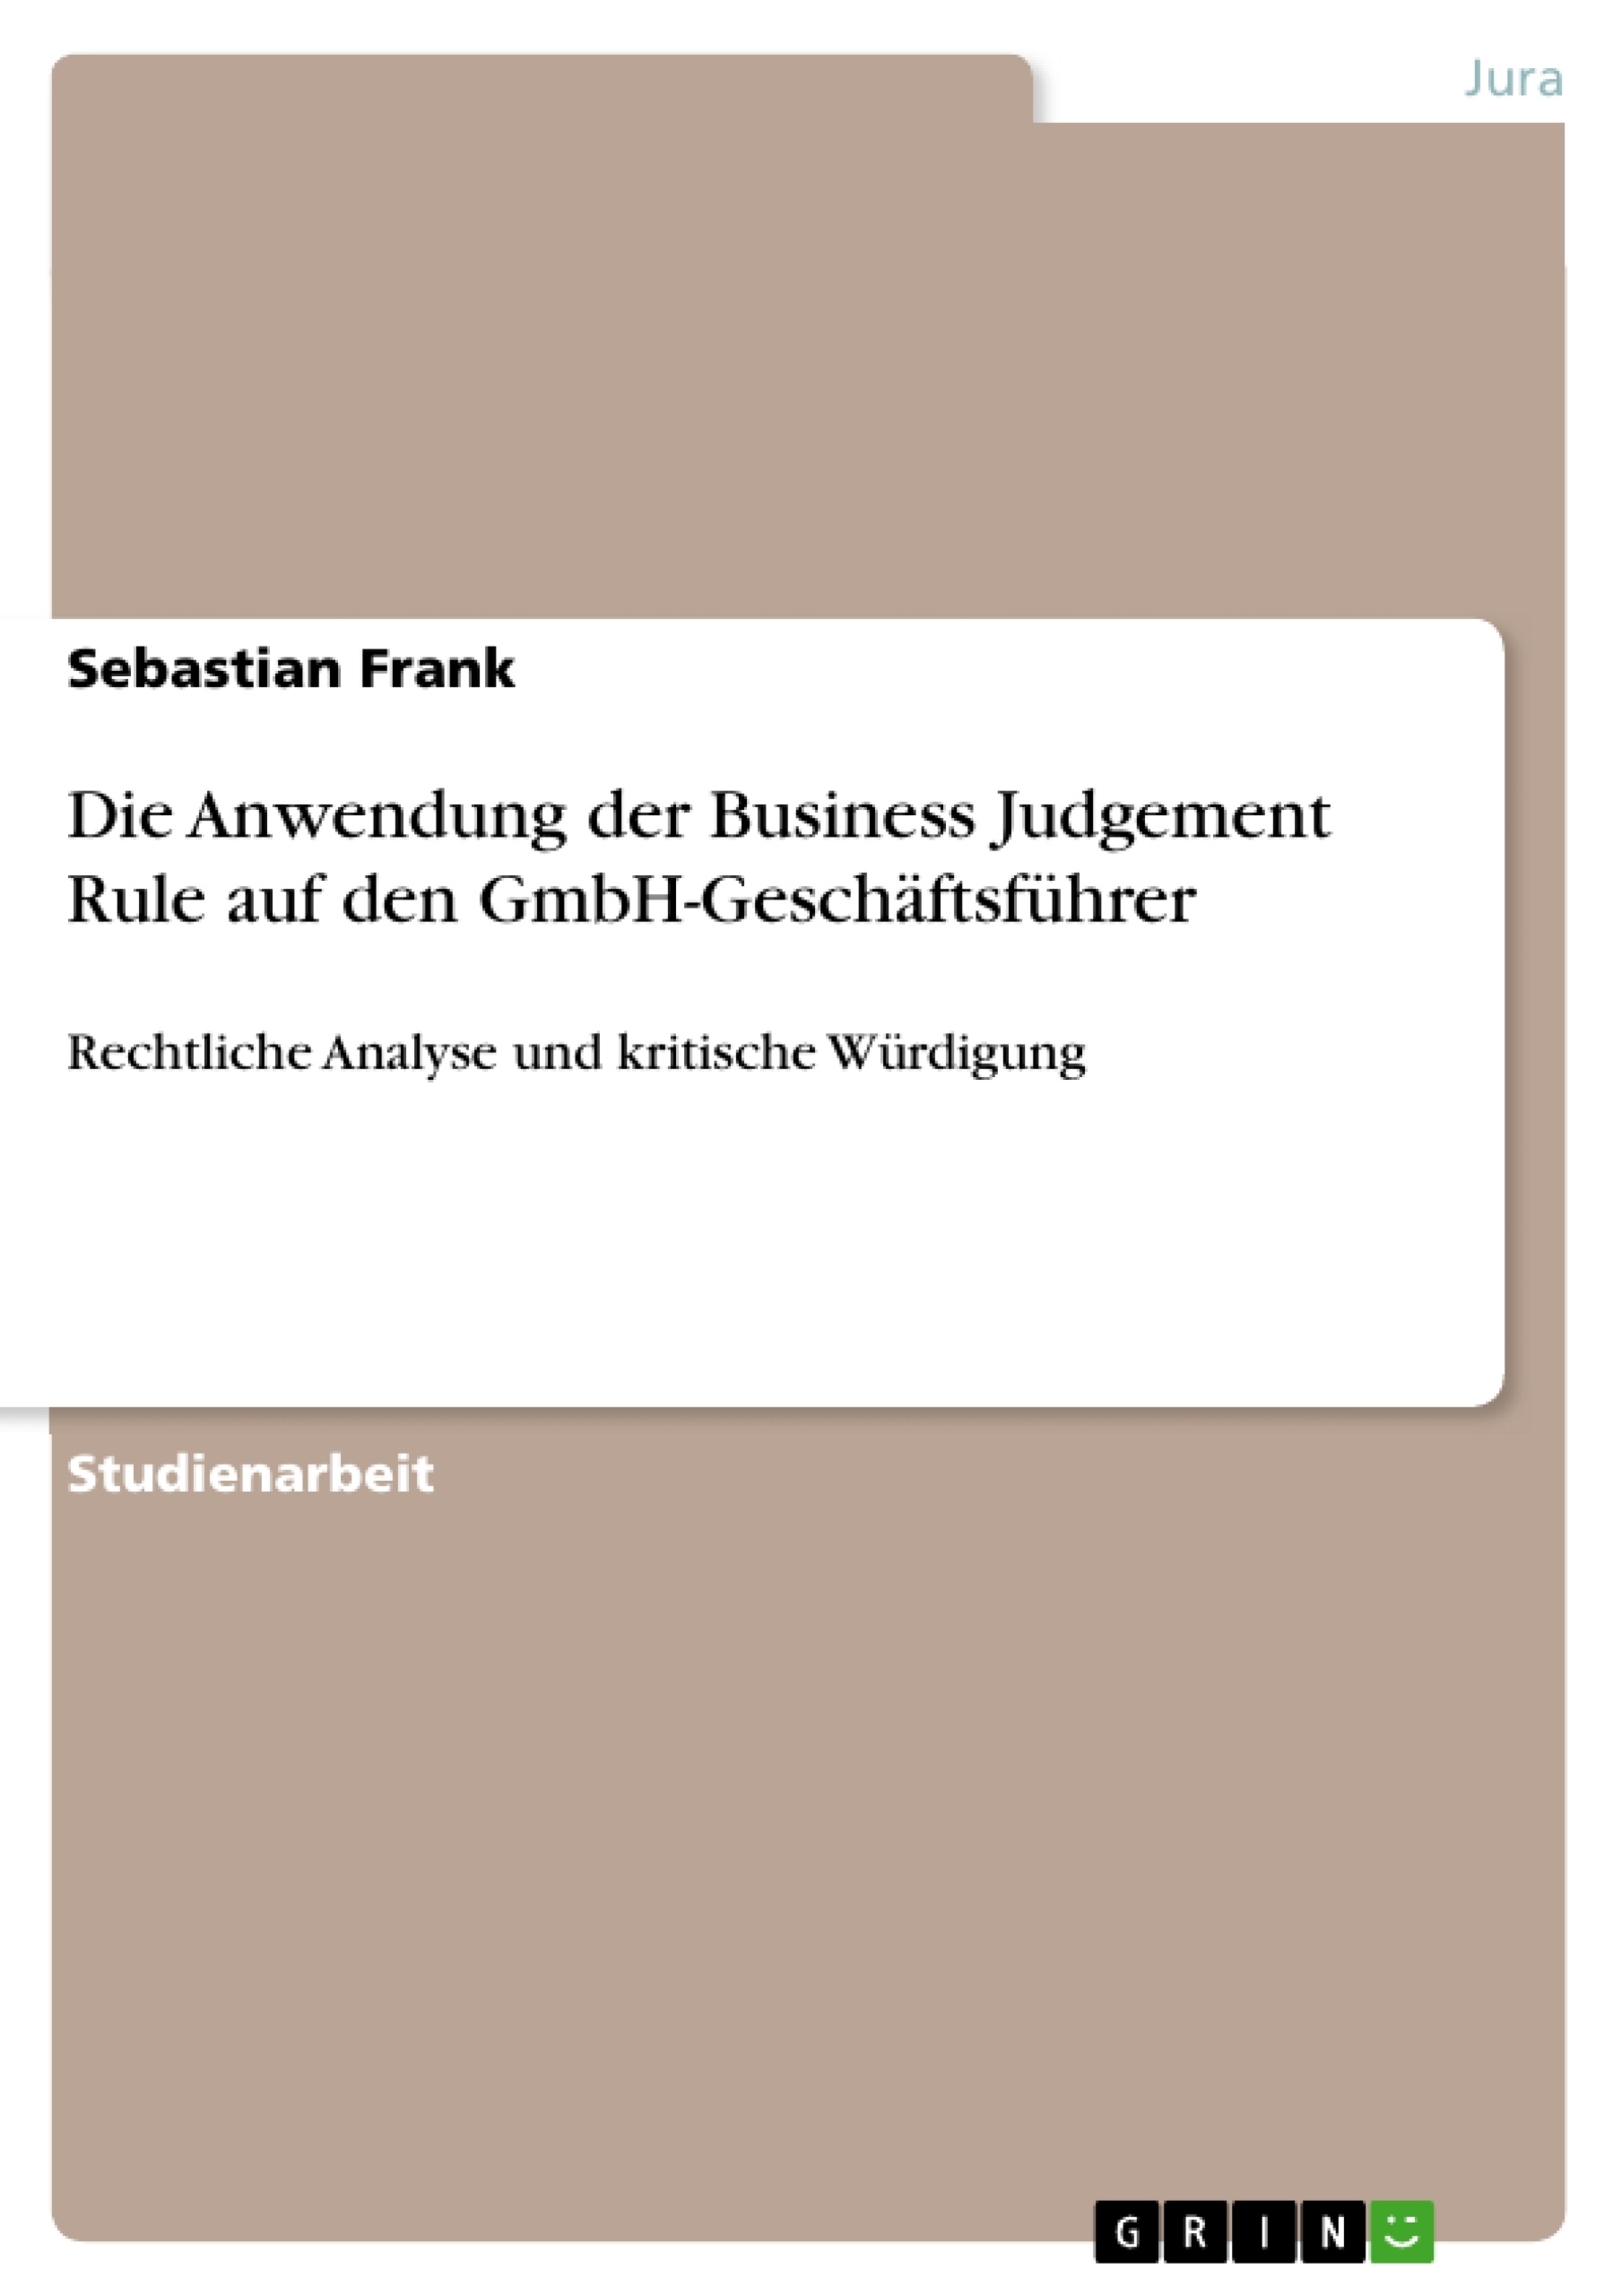 Título: Die Anwendung der Business Judgement Rule auf den GmbH-Geschäftsführer